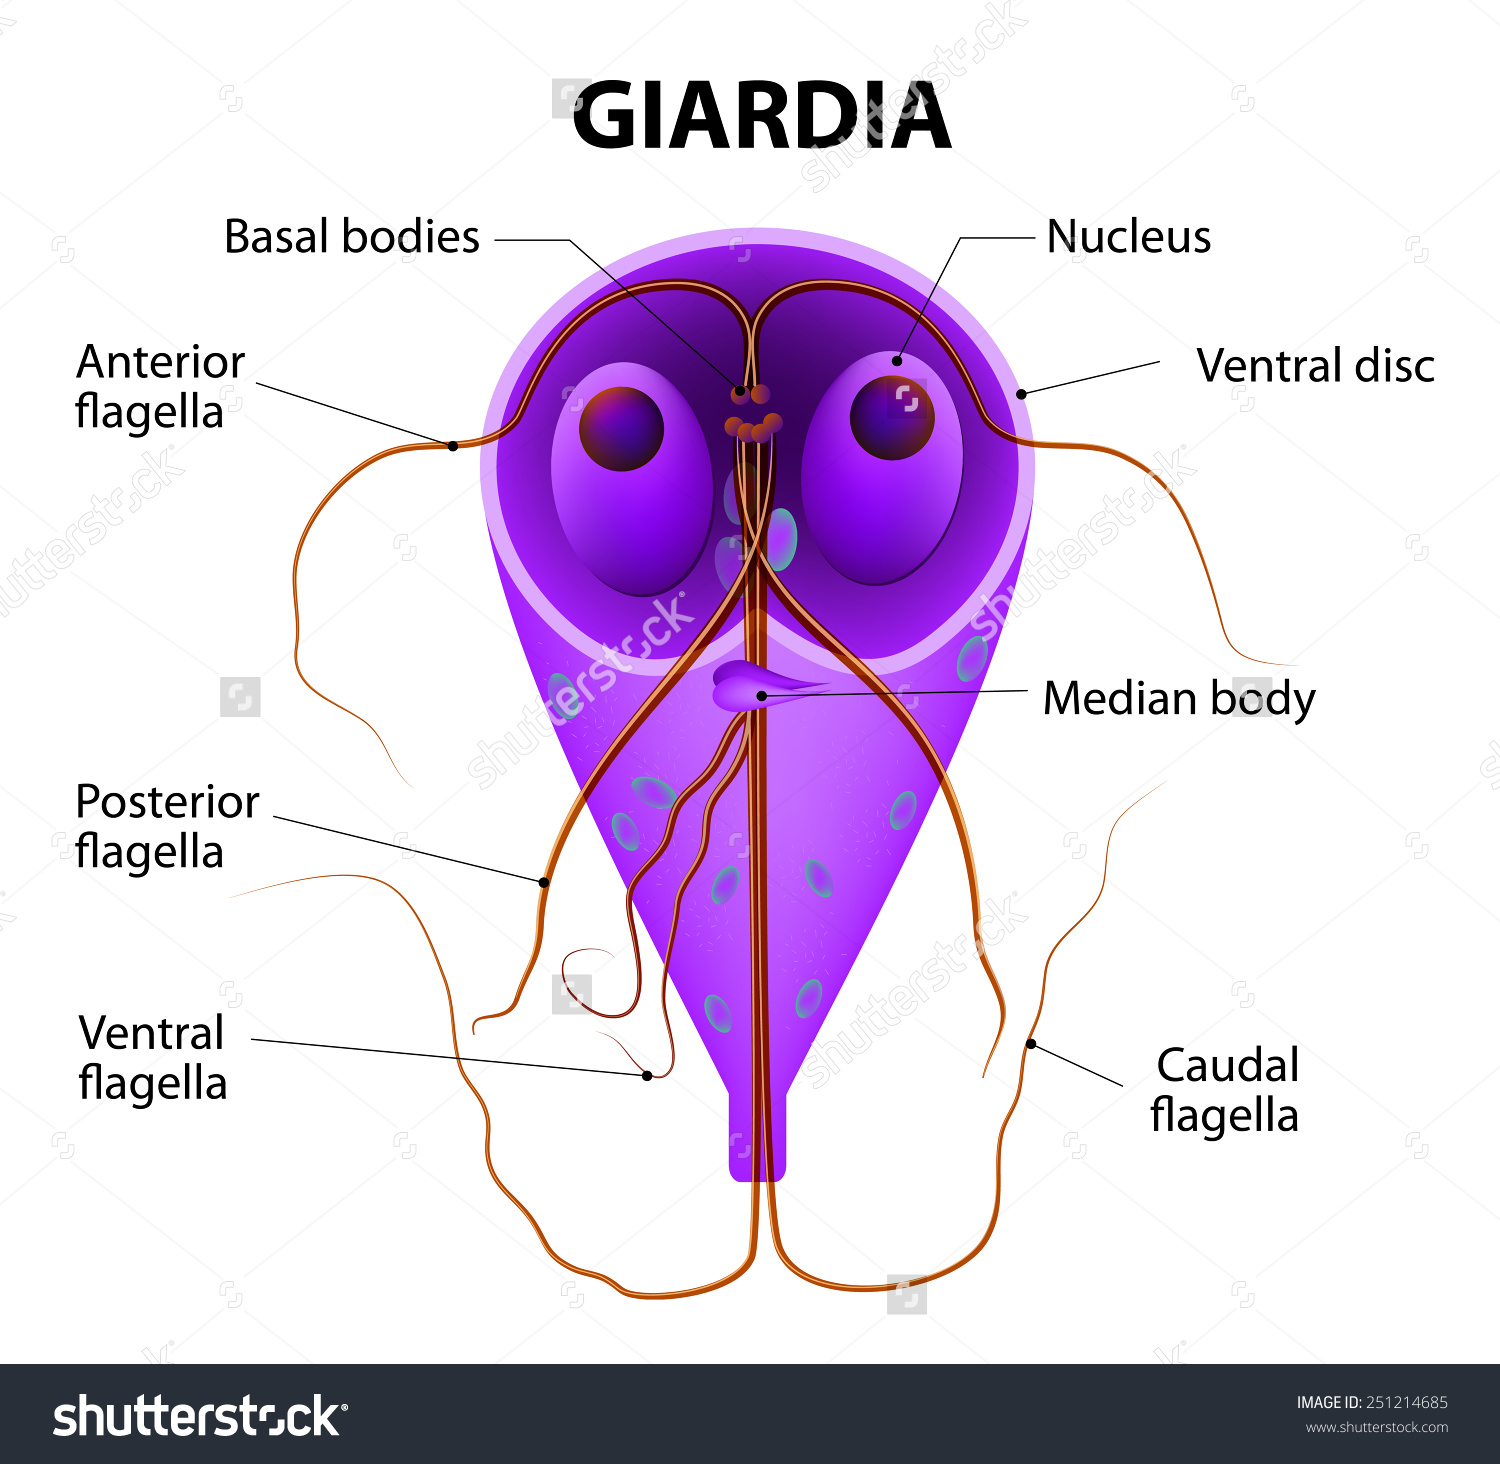 A giardiasis kezelése felnőtteknél és fonálférgeknél - az epe vizsgálata opisthorchiasis esetén